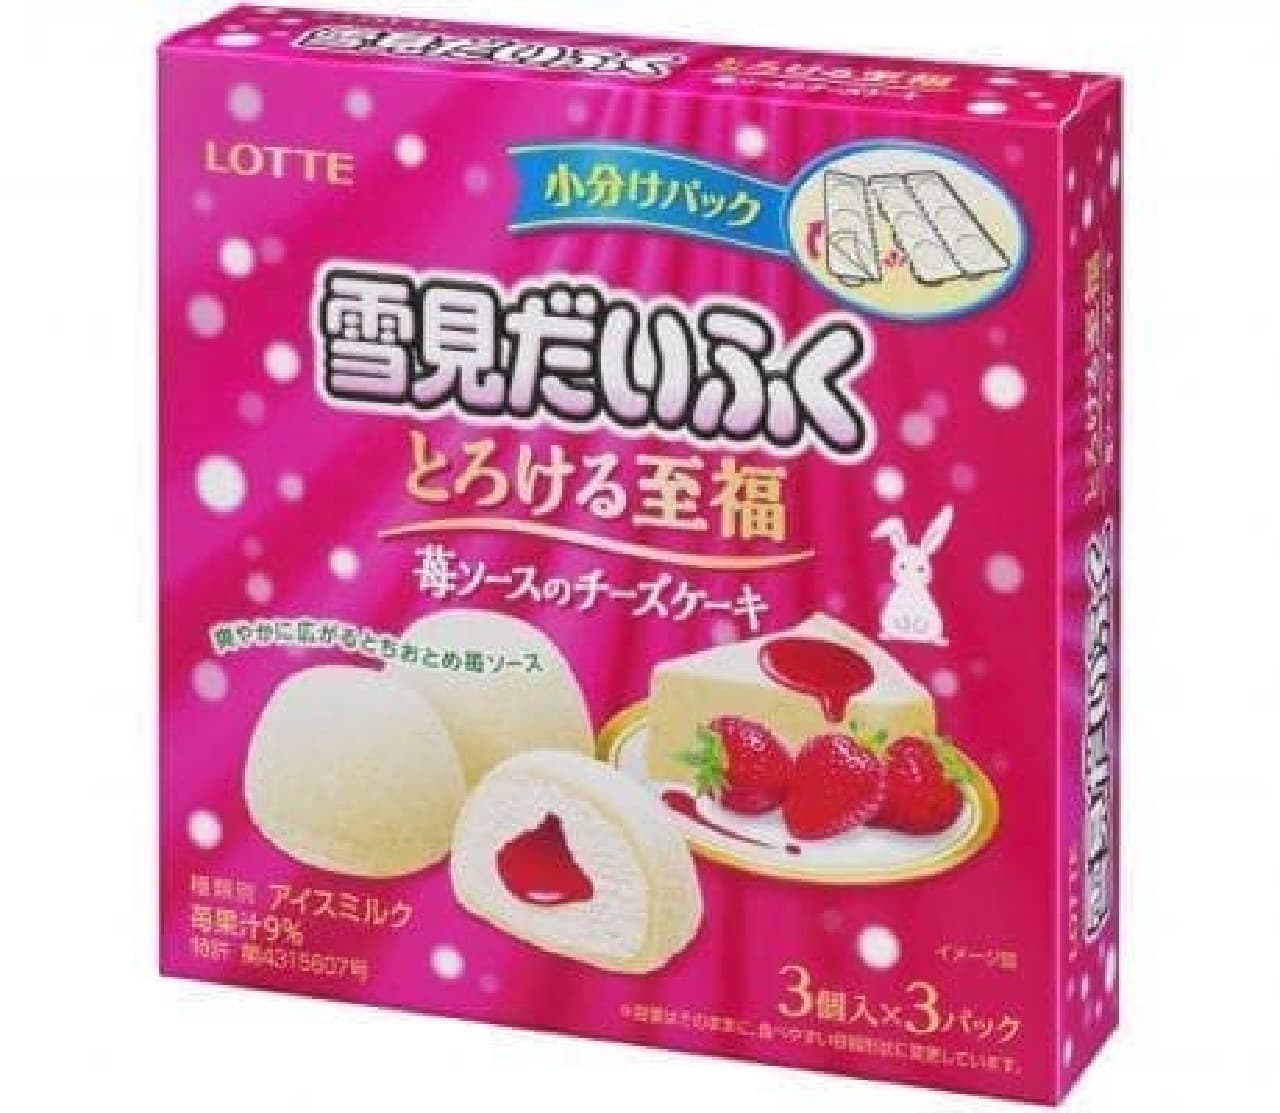 Lotte Ice "Yukimi Daifuku Melting Blissful Strawberry Sauce Cheesecake"